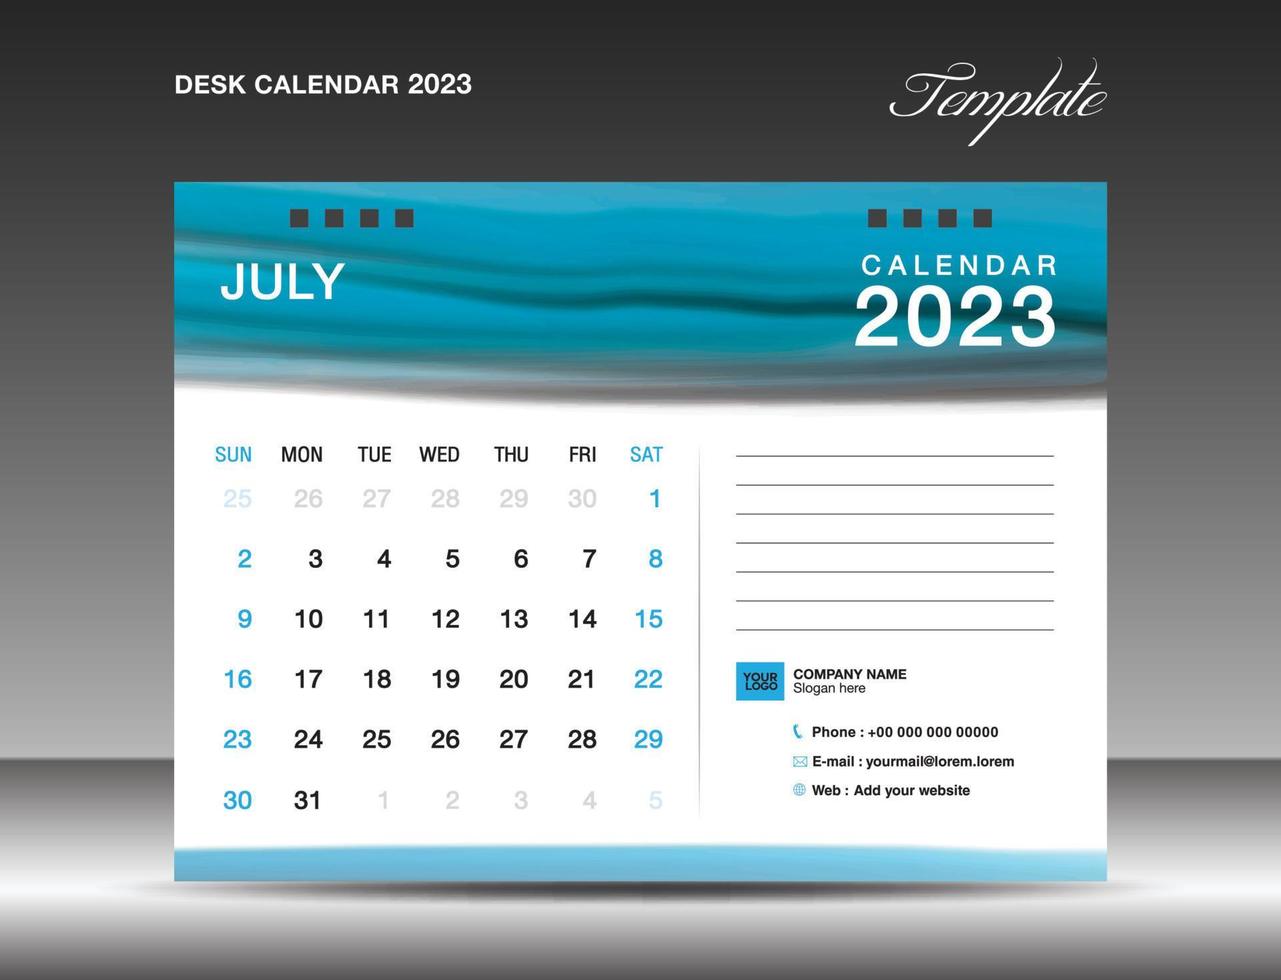 calendario de escritorio 2023 - plantilla de julio de 2023, plantilla de diseño de calendario 2023, planificador, simple, diseño de calendario de pared, la semana comienza el domingo, impresión, anuncio, fondo de acuarela azul, vector